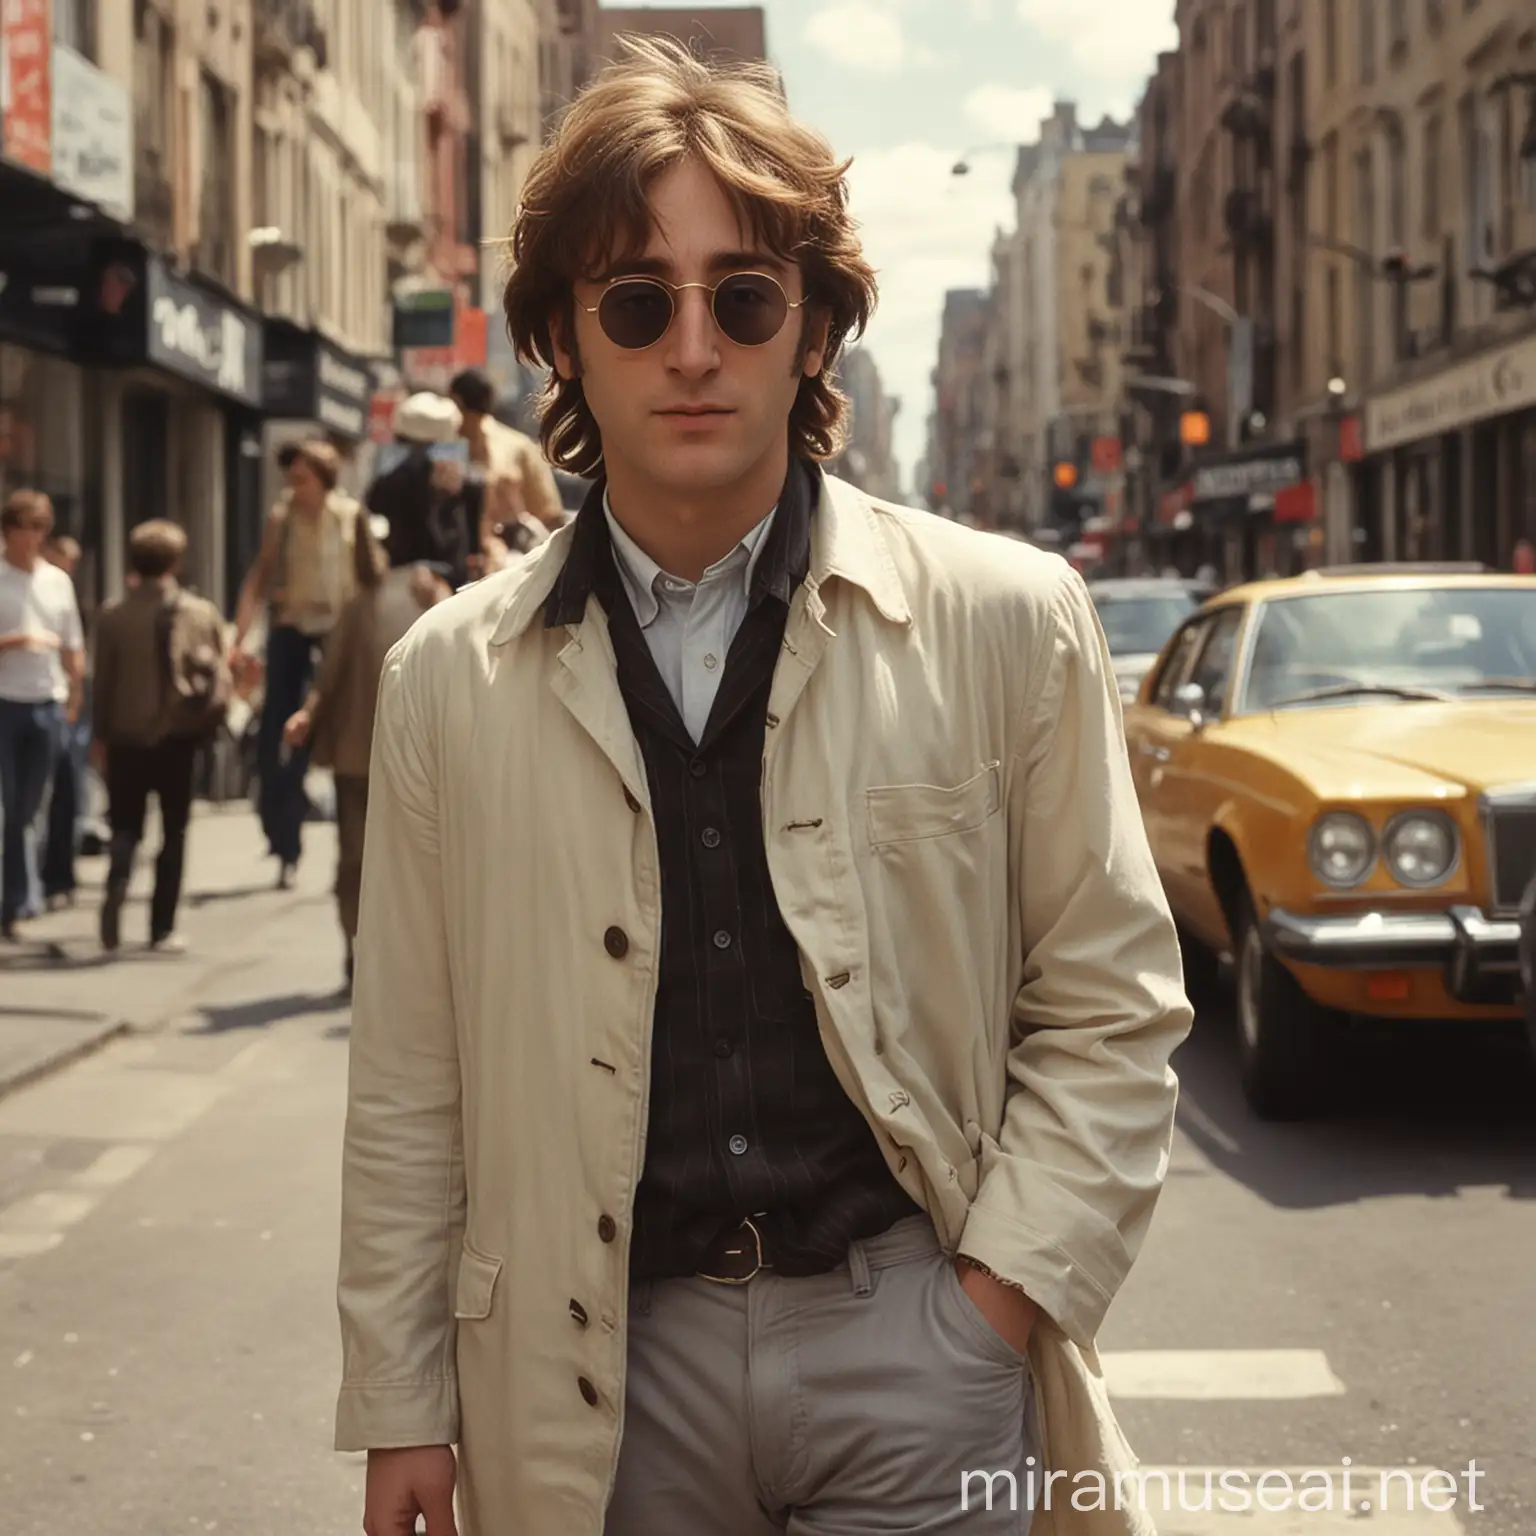 Modern John Lennon Walking in City Streets